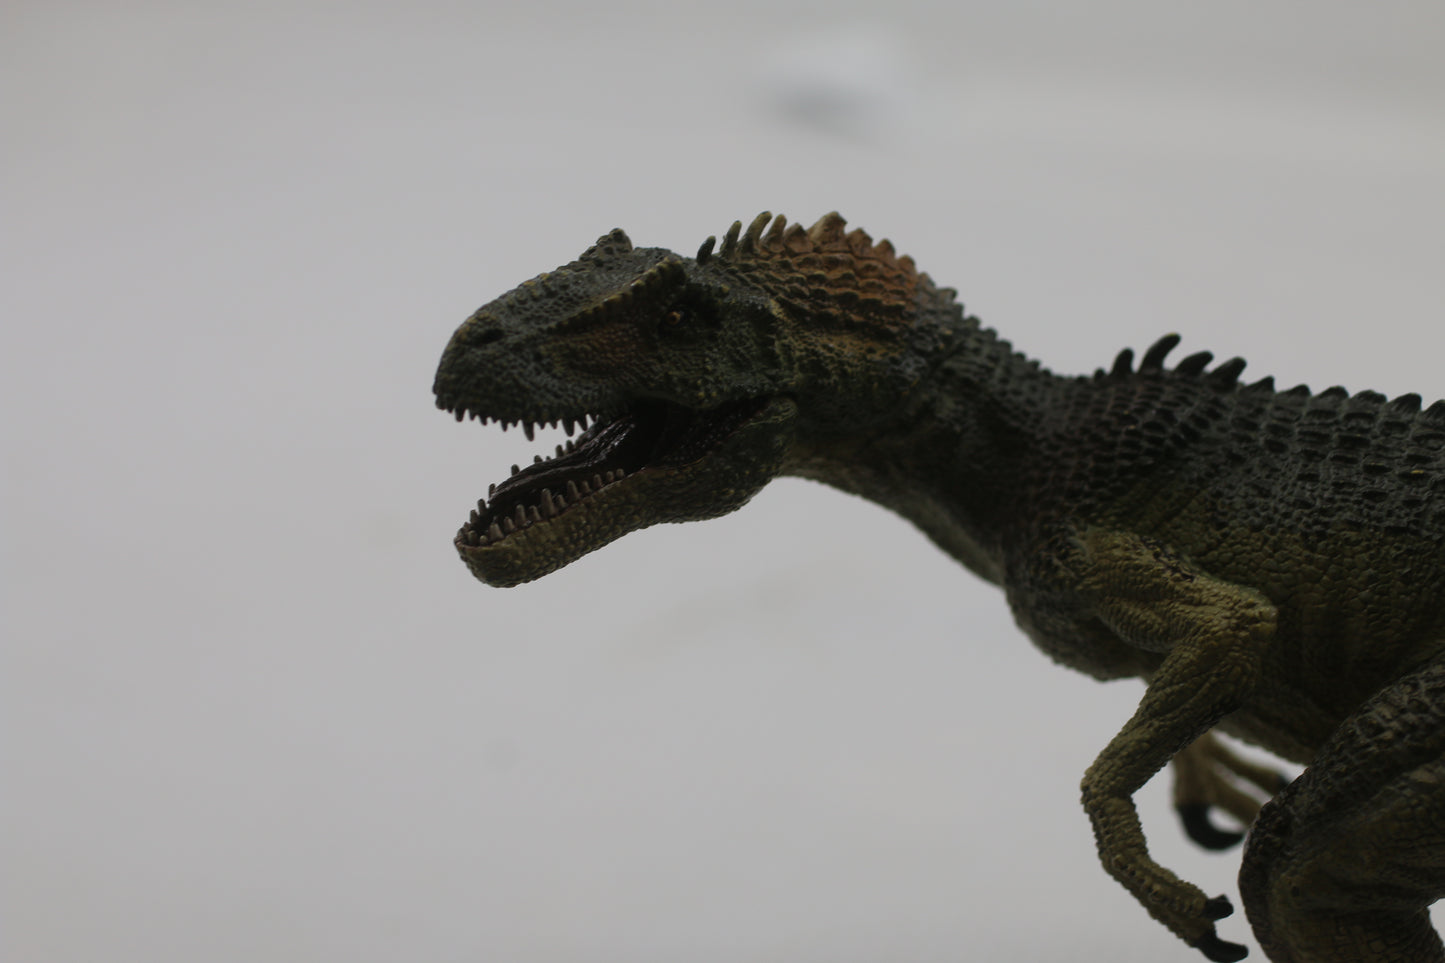 2008 Papo 55016 Allosaurus Dinosaur Figure Animal Toy Allosauridae Allosaurinae #2